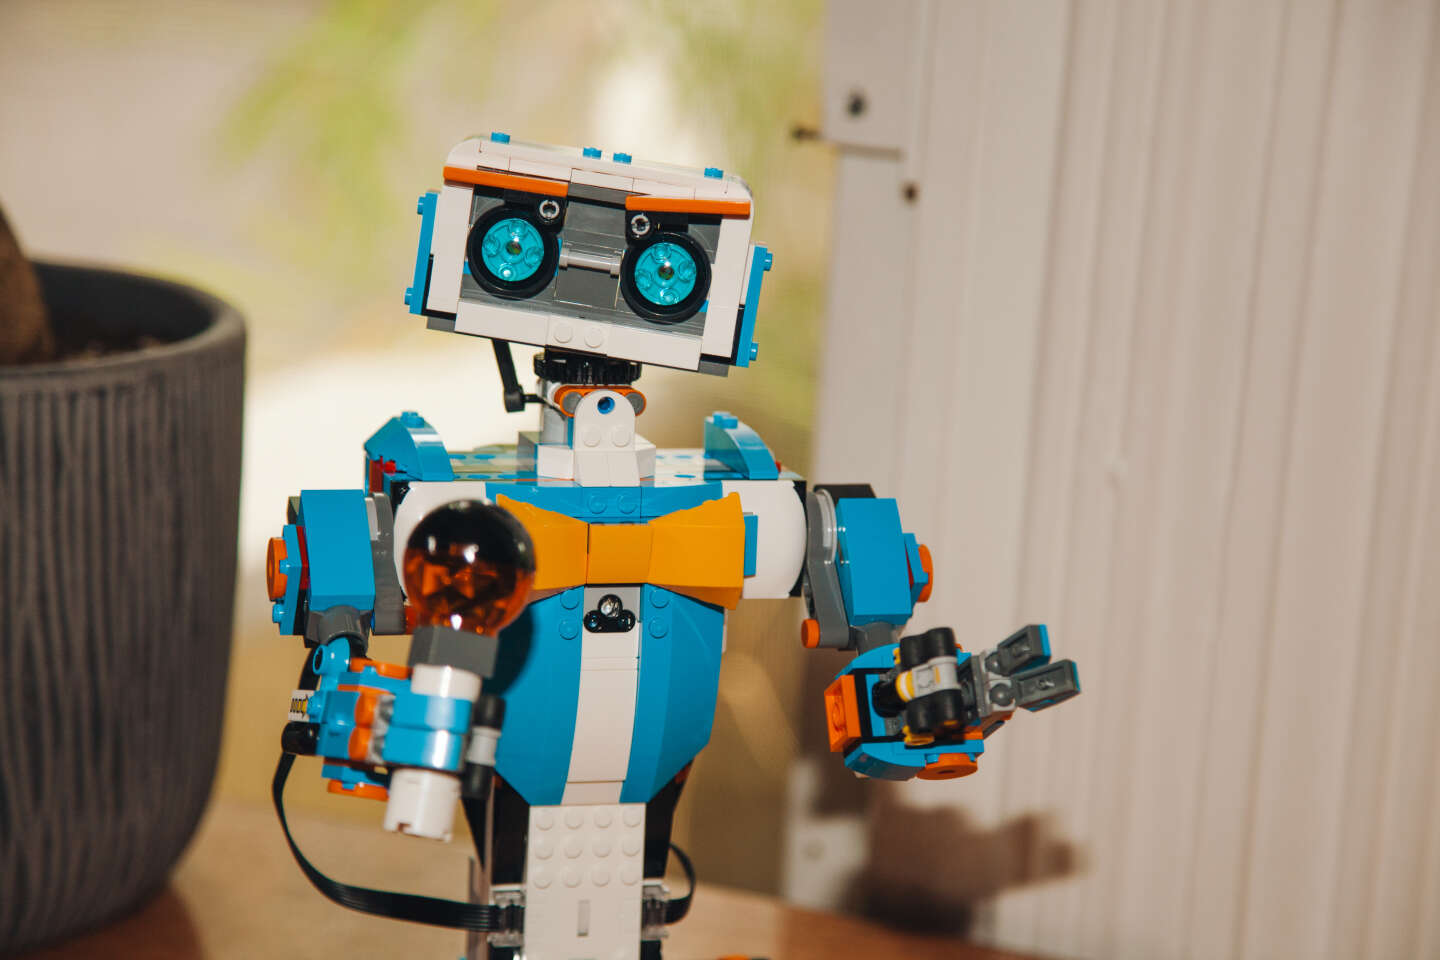 Robot Enfant 5 Ans Et plus, Robot Jouet Garçon Et Fille